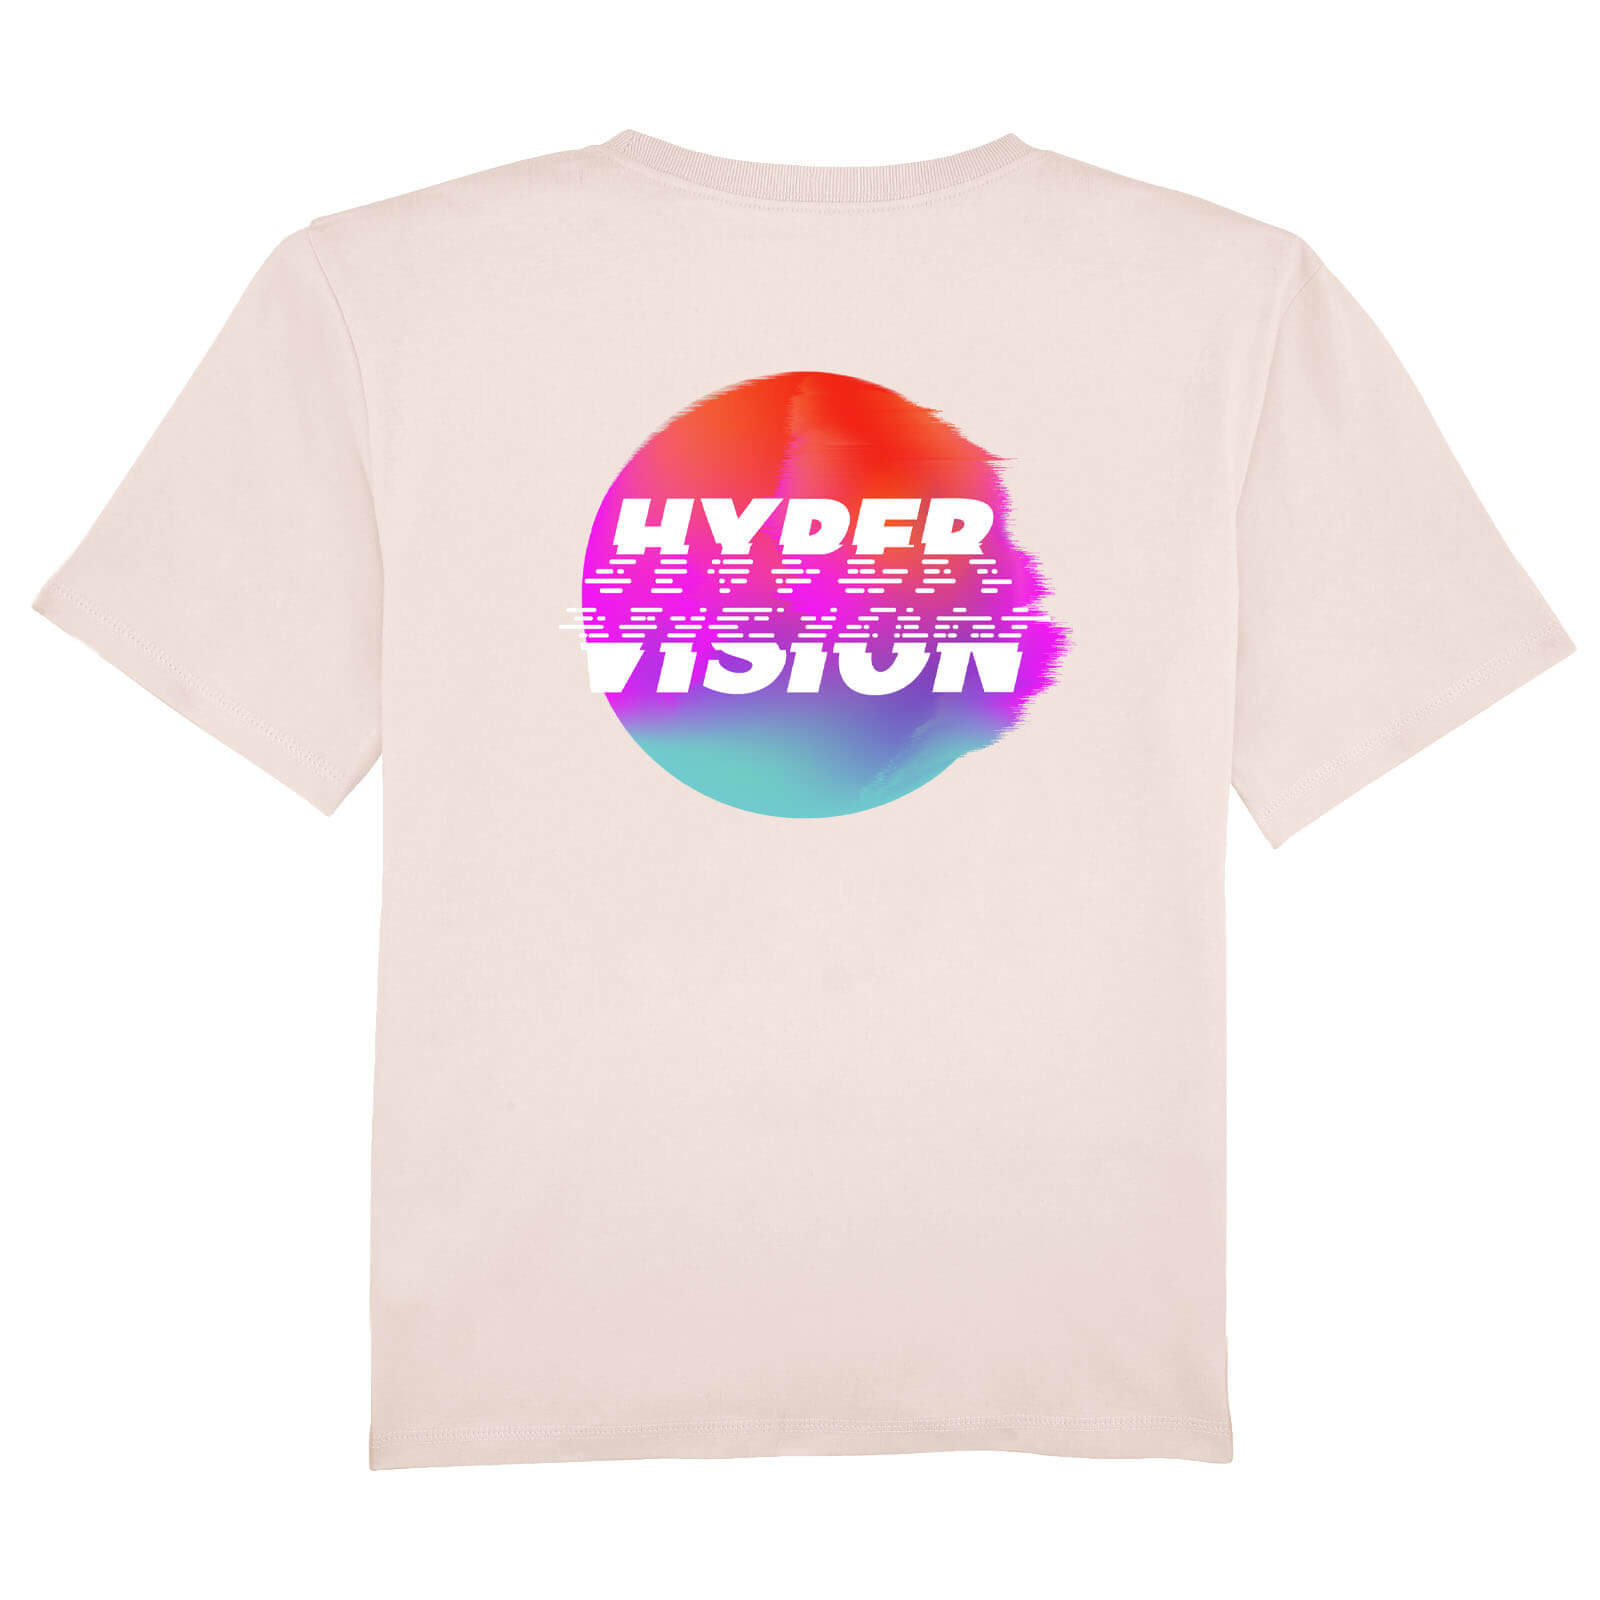 Camiseta para mujeres de UKF Hyper Vision